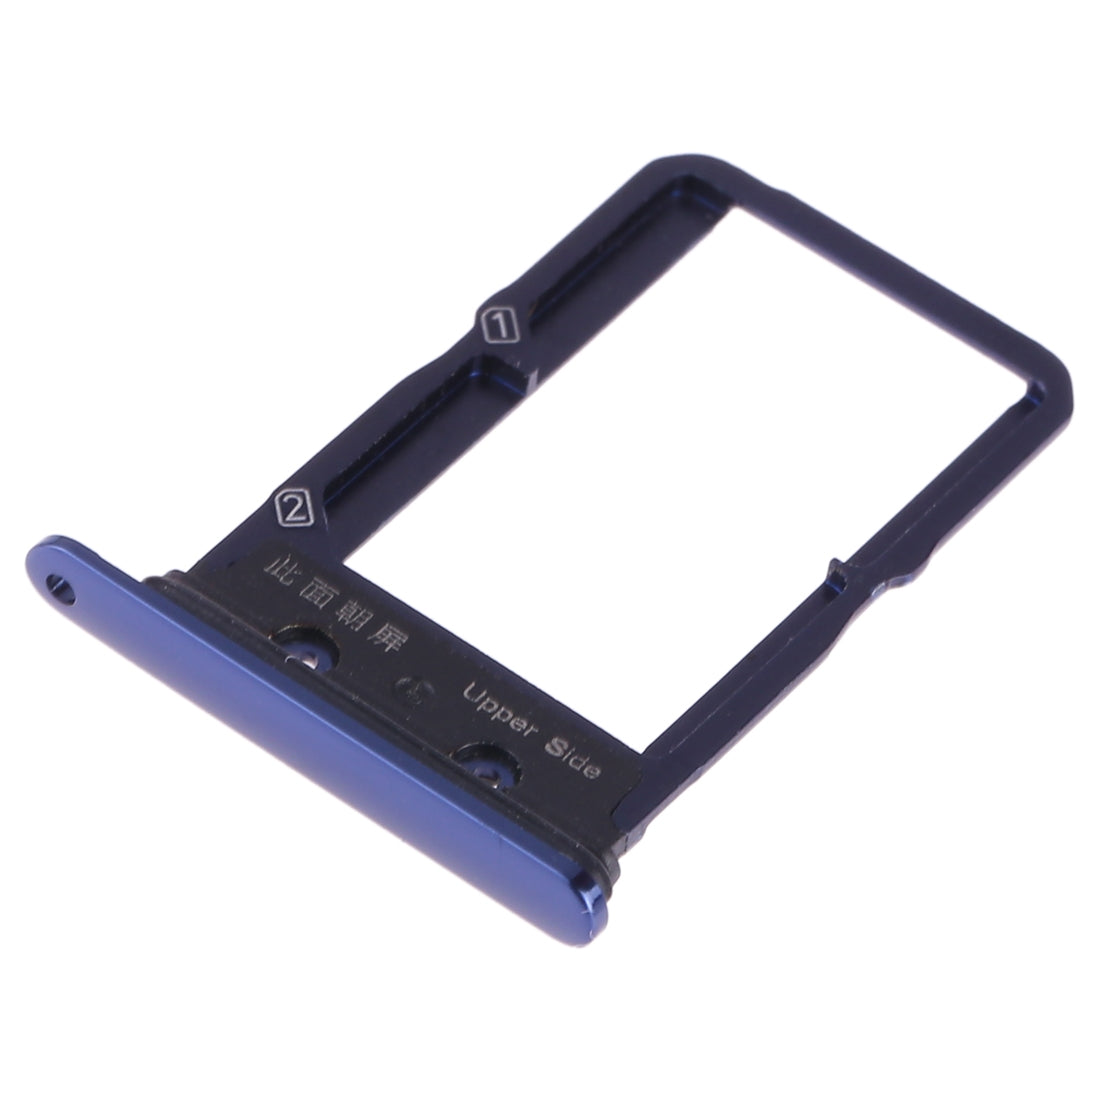 Dual SIM Vivo X27 Blue SIM Holder Tray